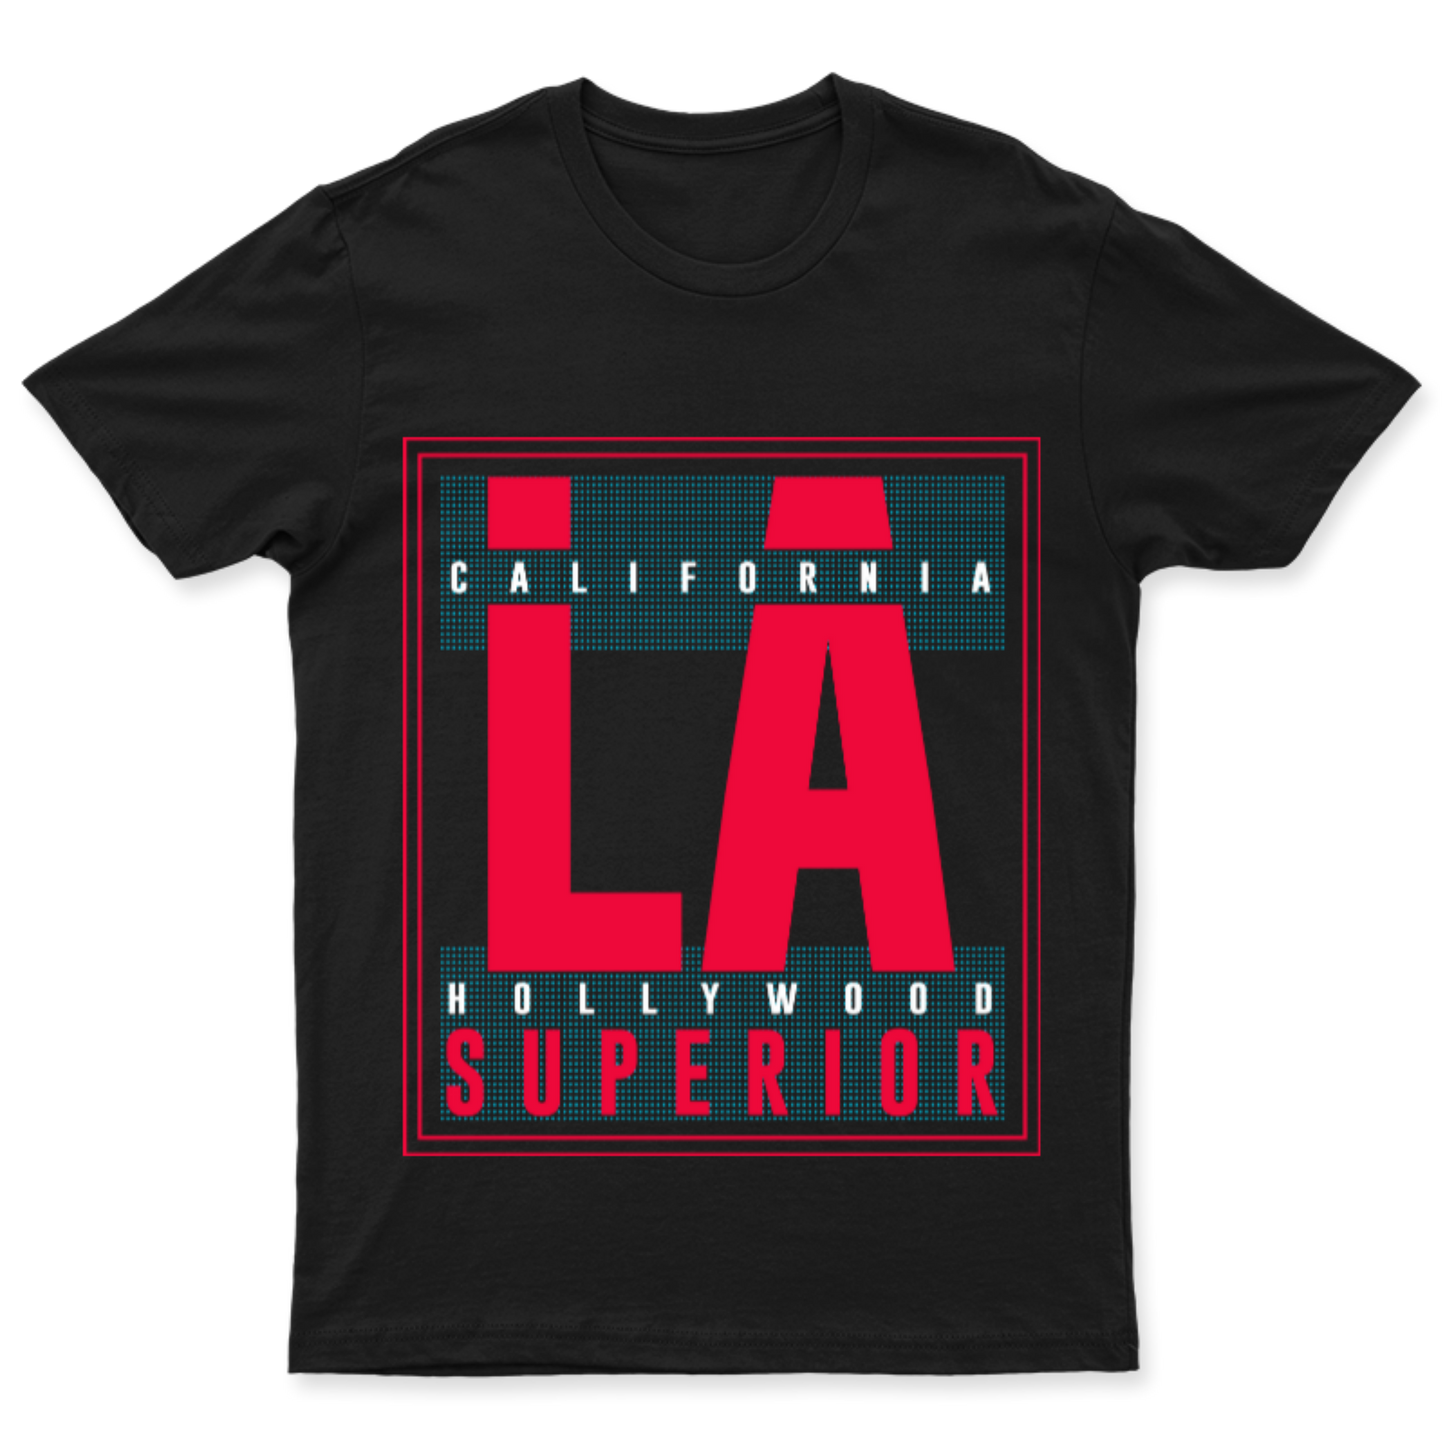 Playera L.A. Superior - Hombre